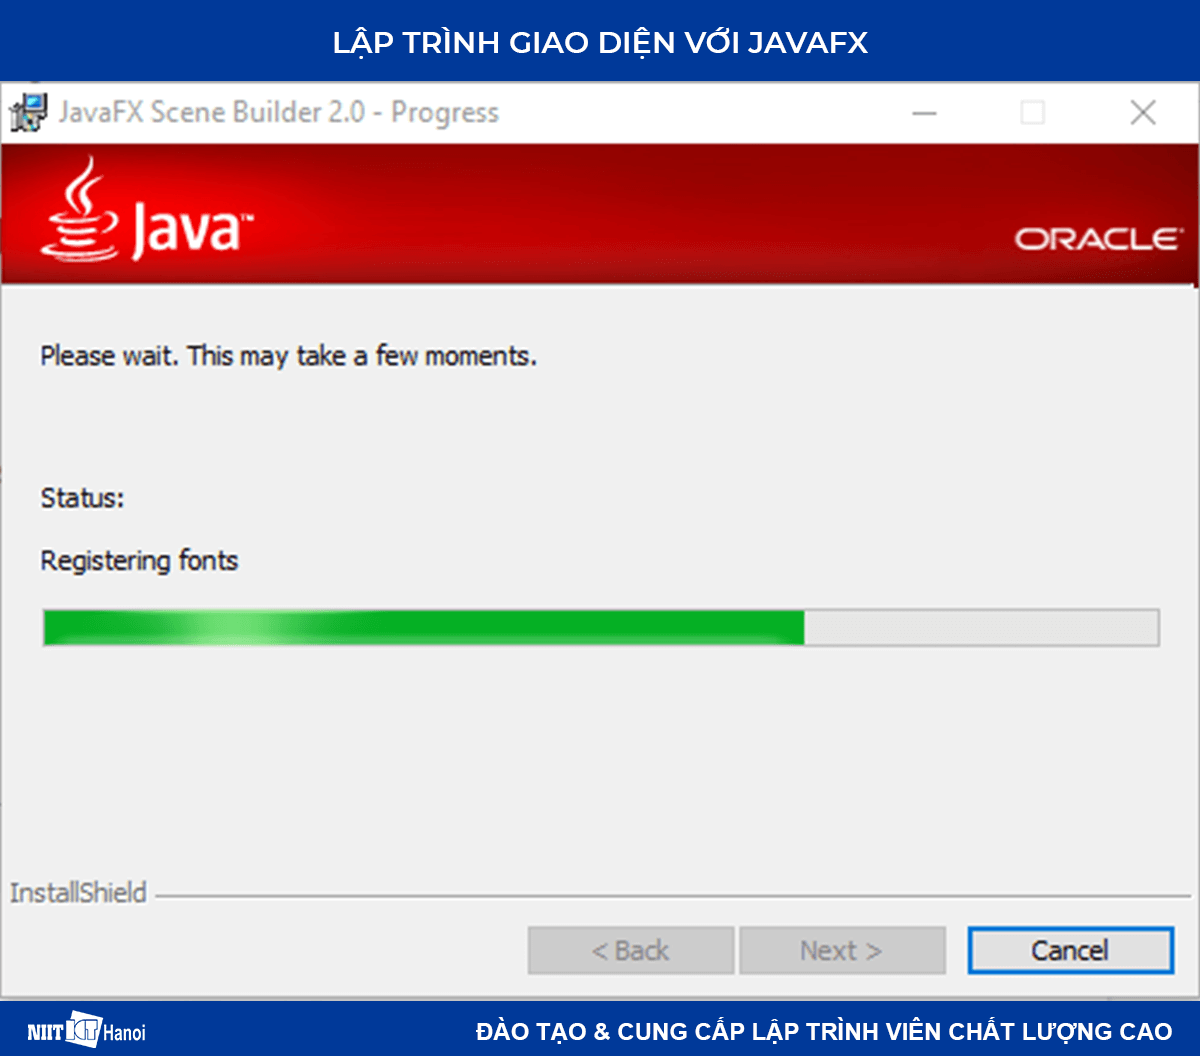 Lập trình giao diện trong Java với JavaFX